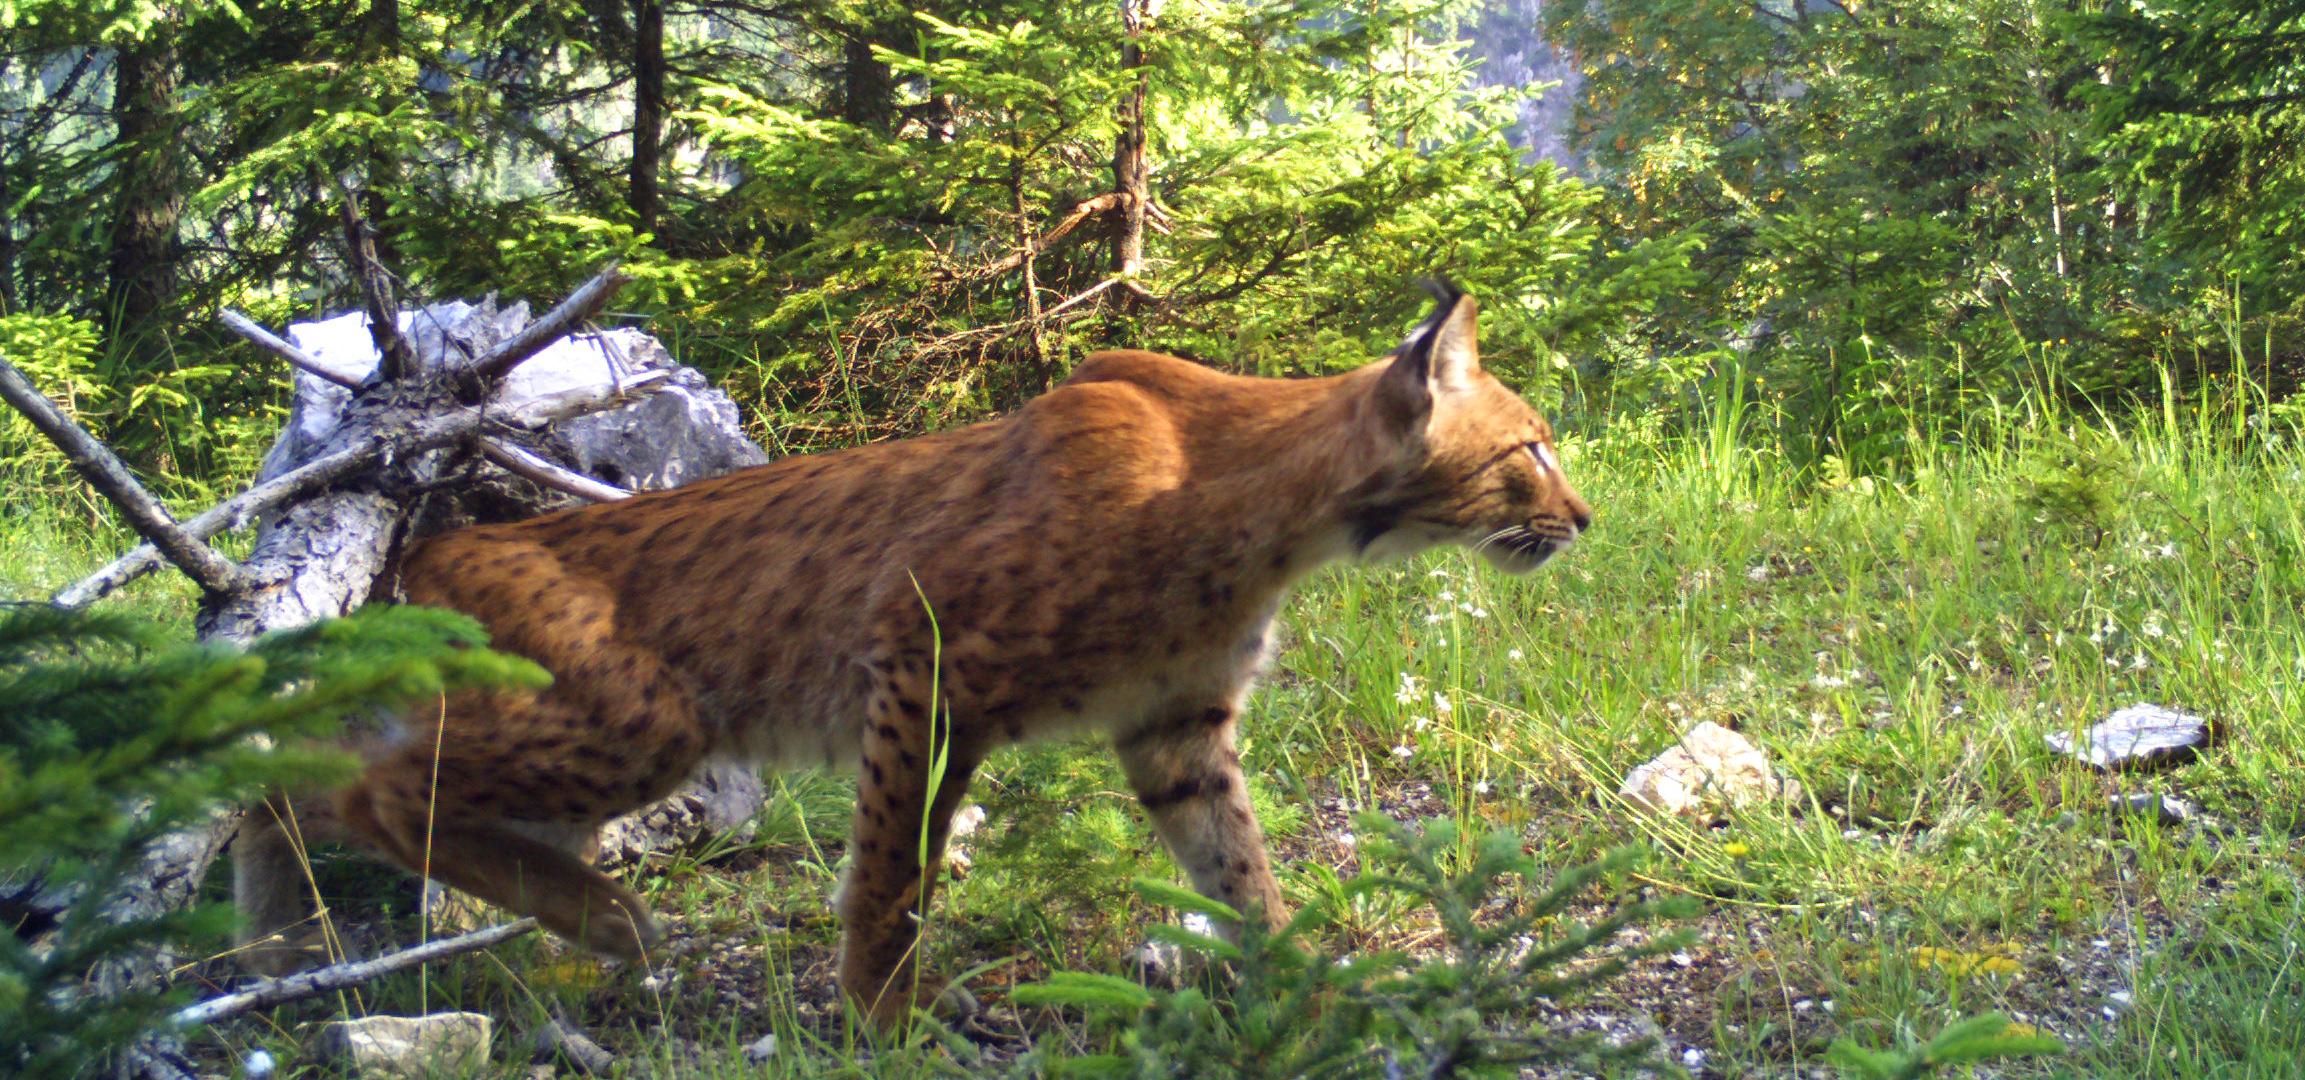 Lynx Lakota runs through the forest on an overgrown path